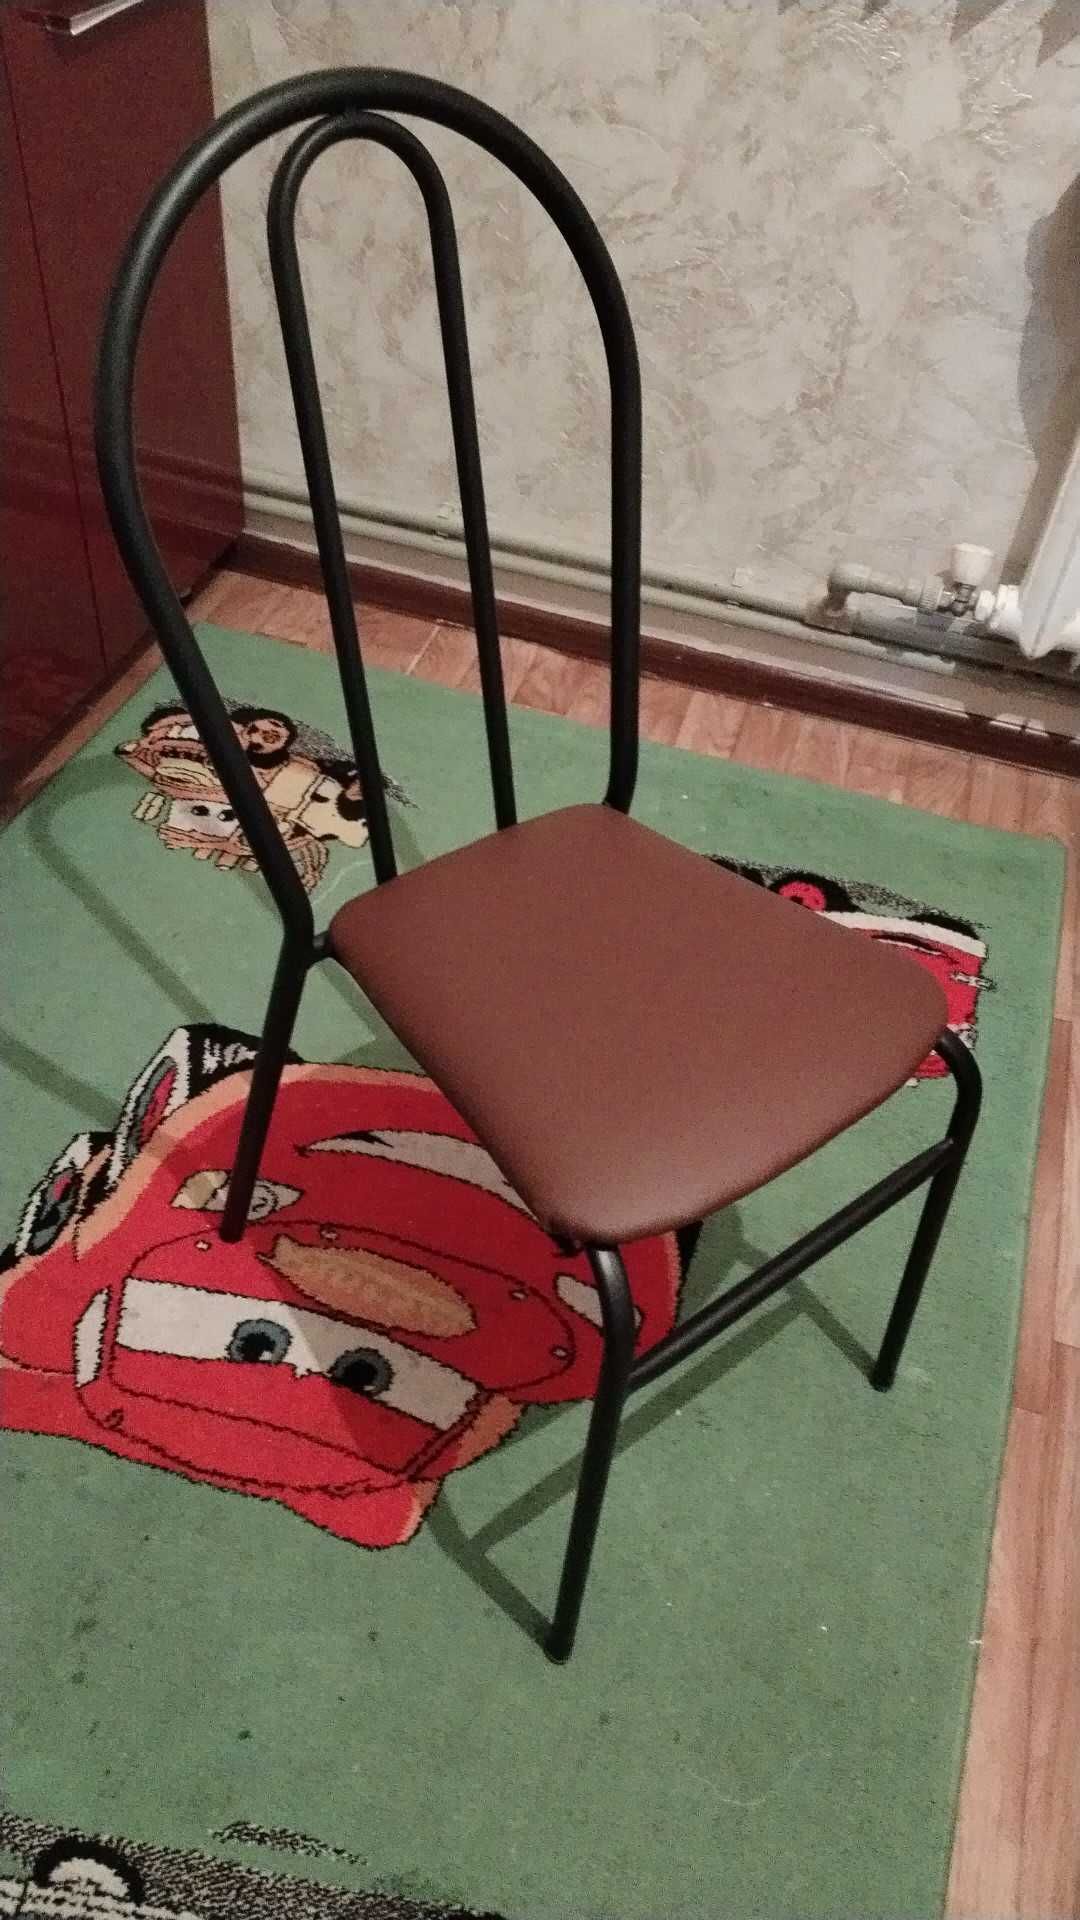 Стол и стулья для кухни и столовой